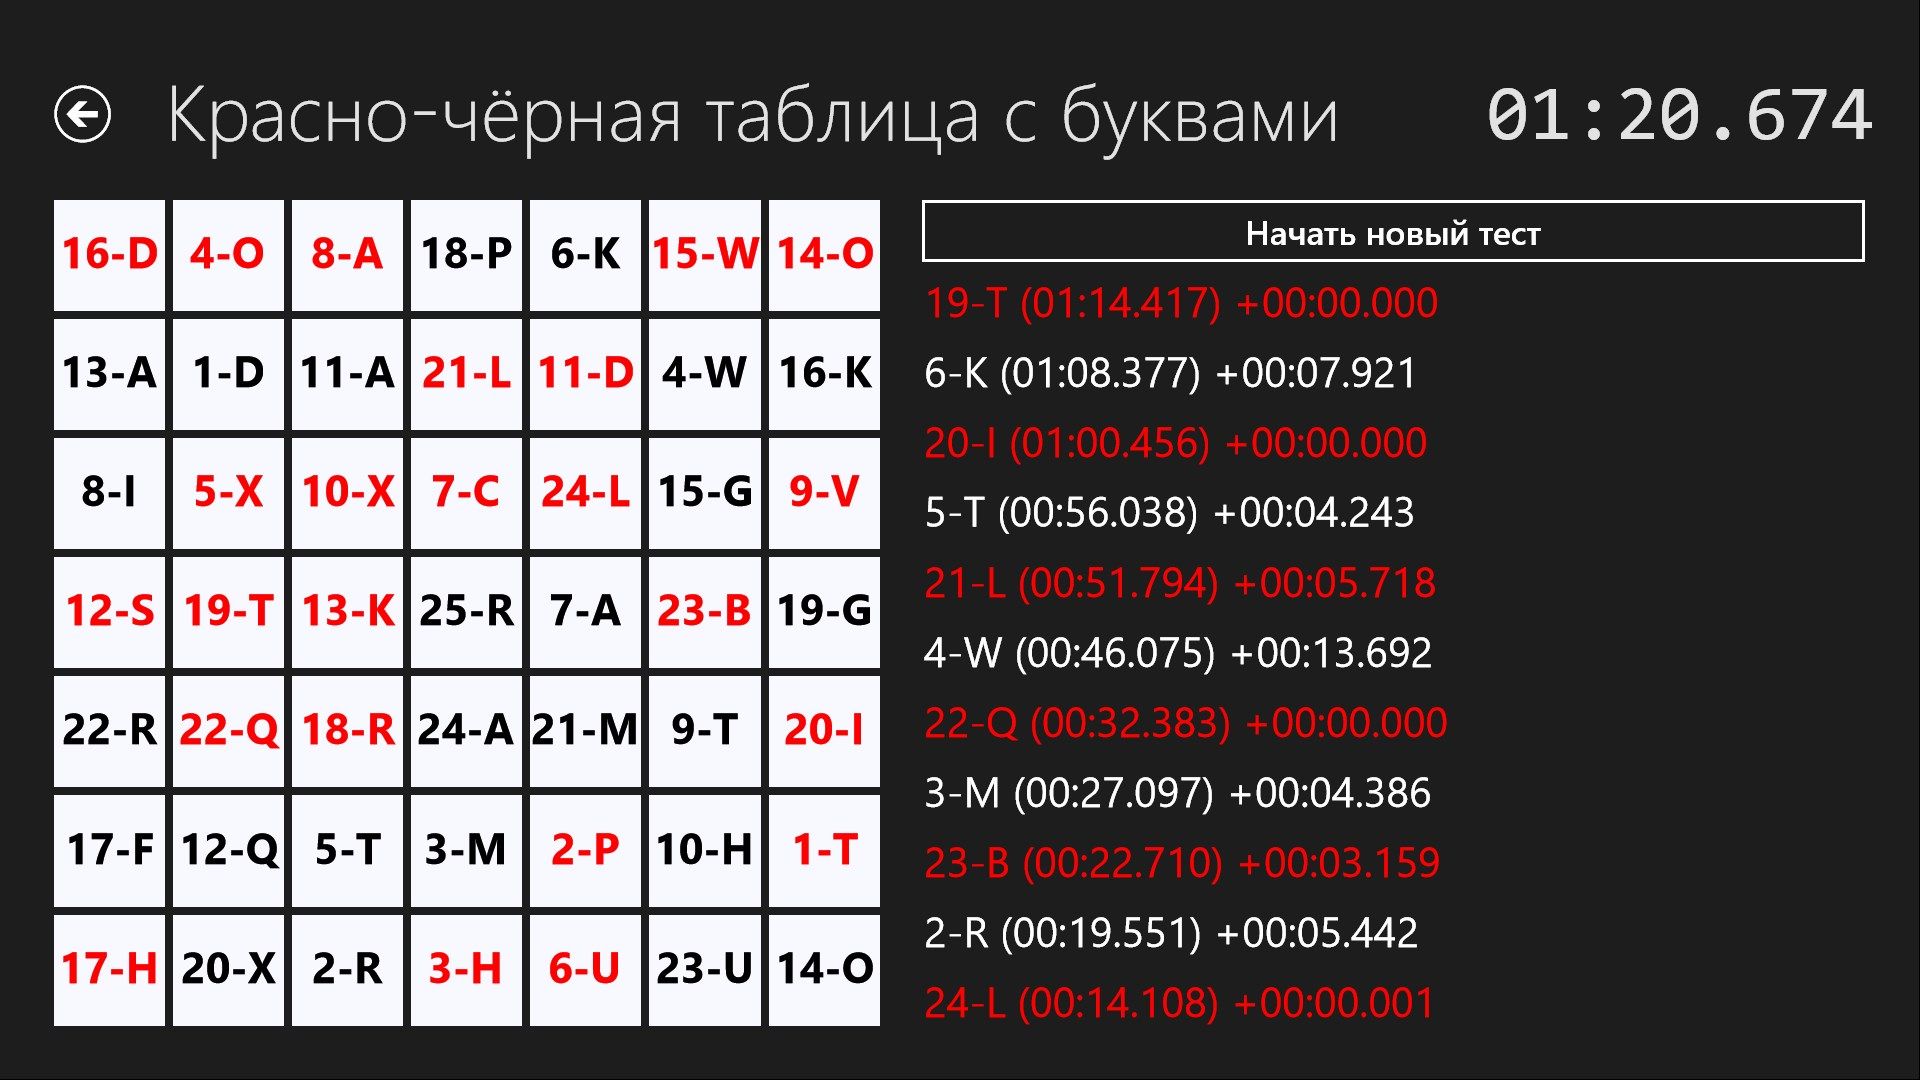 Красно-чёрная таблица с цифрами и буквами. Пример выполнения задания.